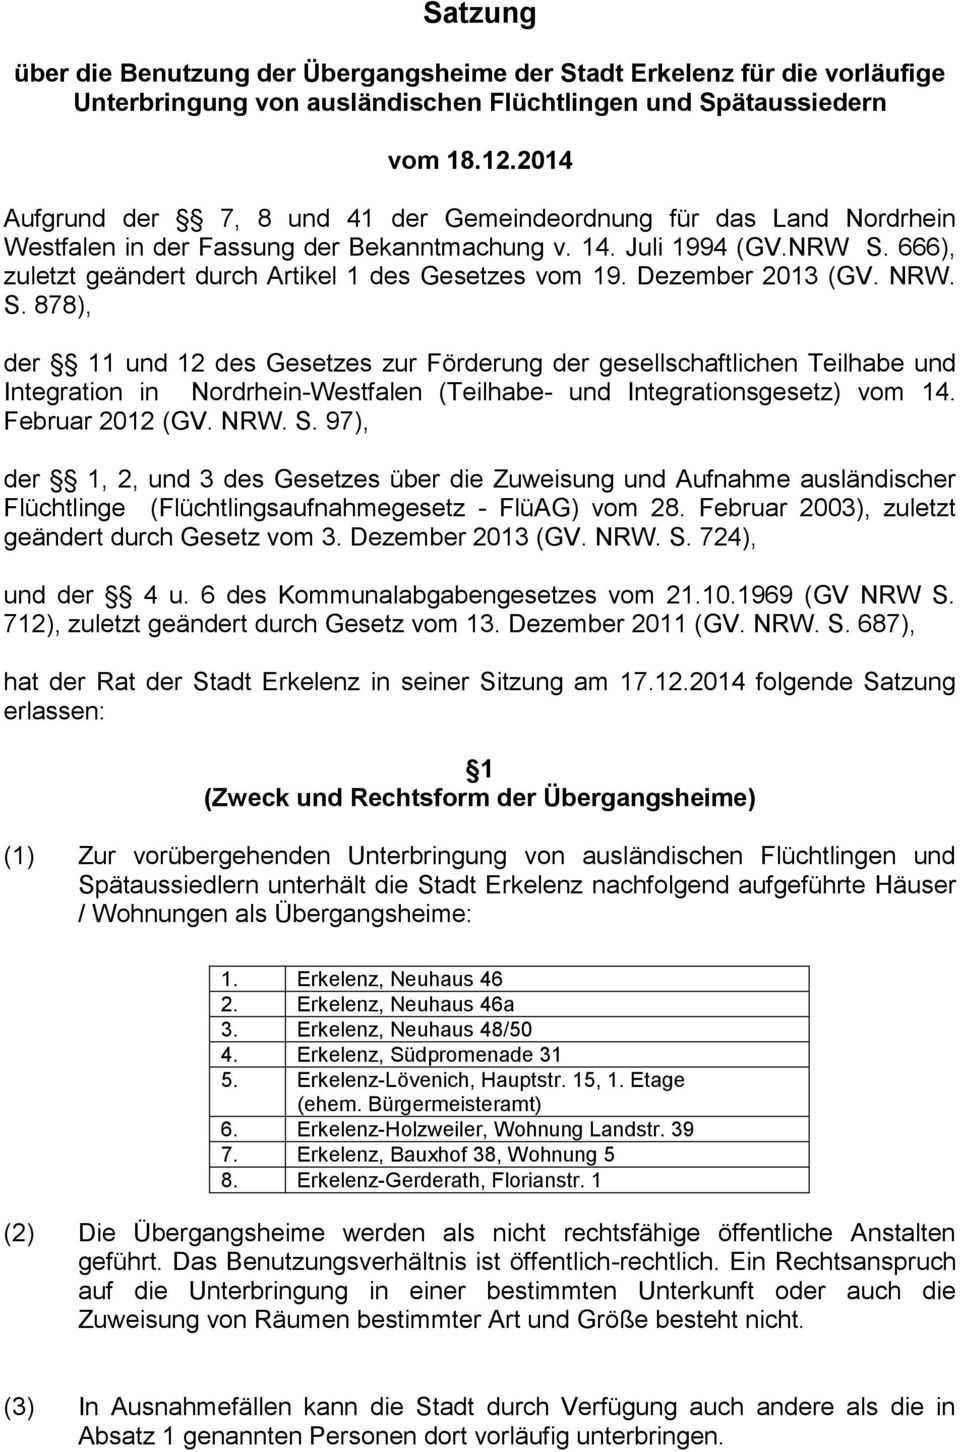 666), zuletzt geändert durch Artikel 1 des Gesetzes vom 19. Dezember 2013 (GV. NRW. S.